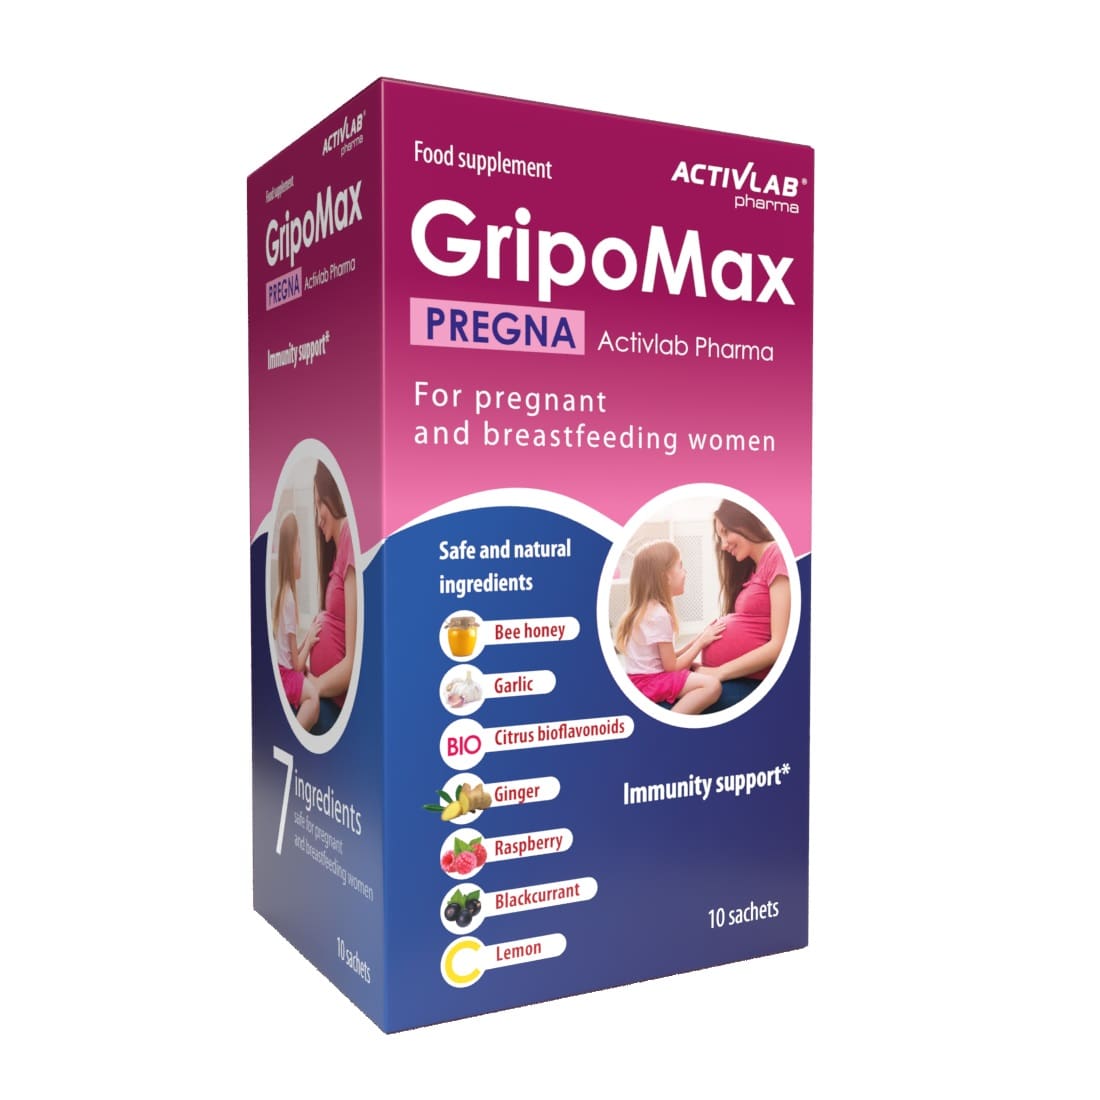 Антиоксиданты ActivLab GripoMax Pregna для повышения иммунитета 10 г х 10 пакетиков